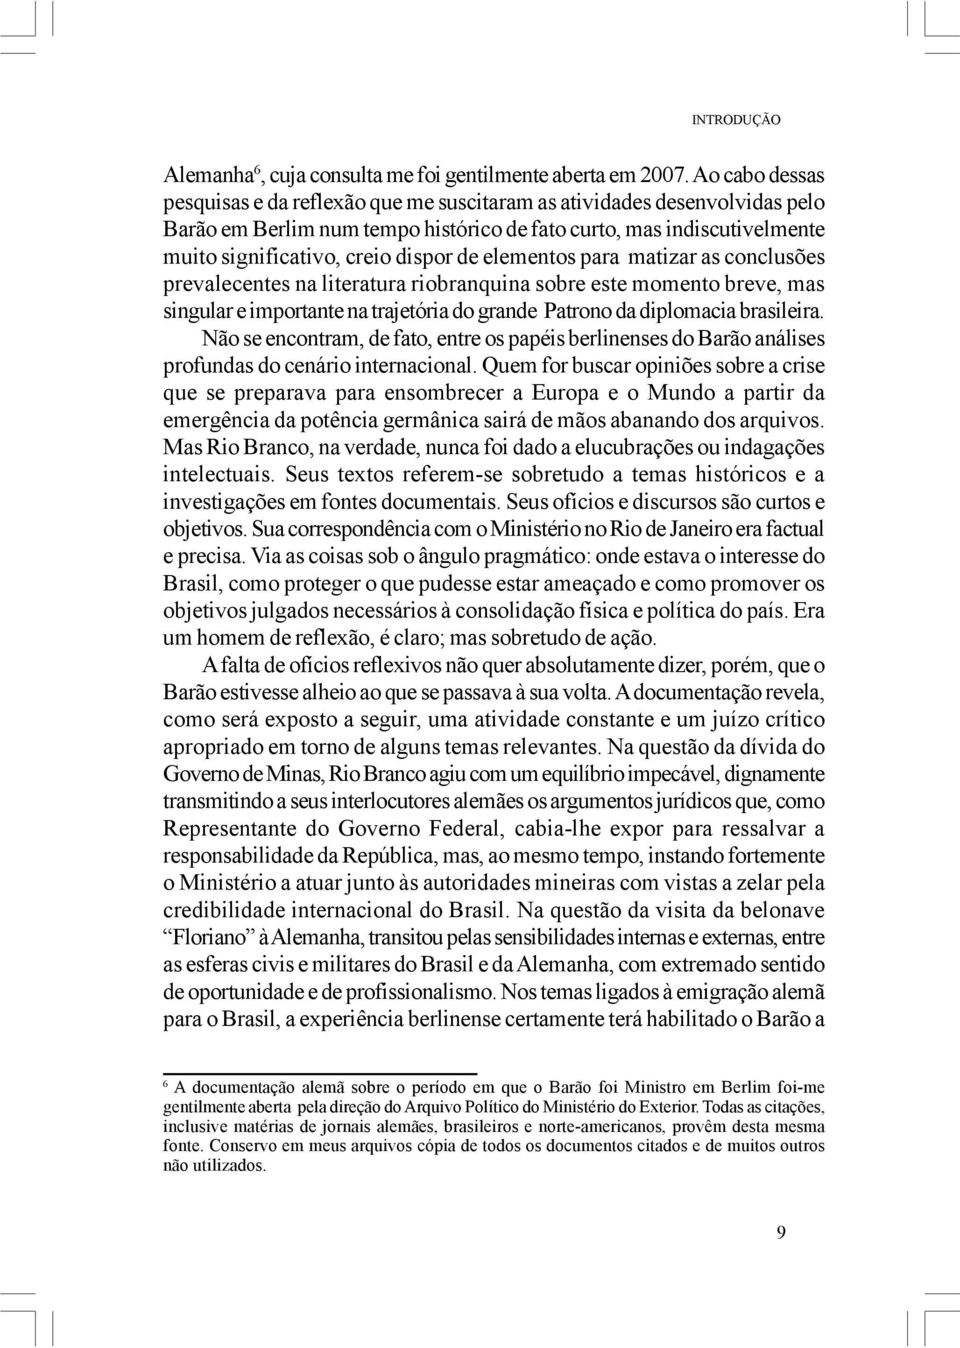 elementos para matizar as conclusões prevalecentes na literatura riobranquina sobre este momento breve, mas singular e importante na trajetória do grande Patrono da diplomacia brasileira.